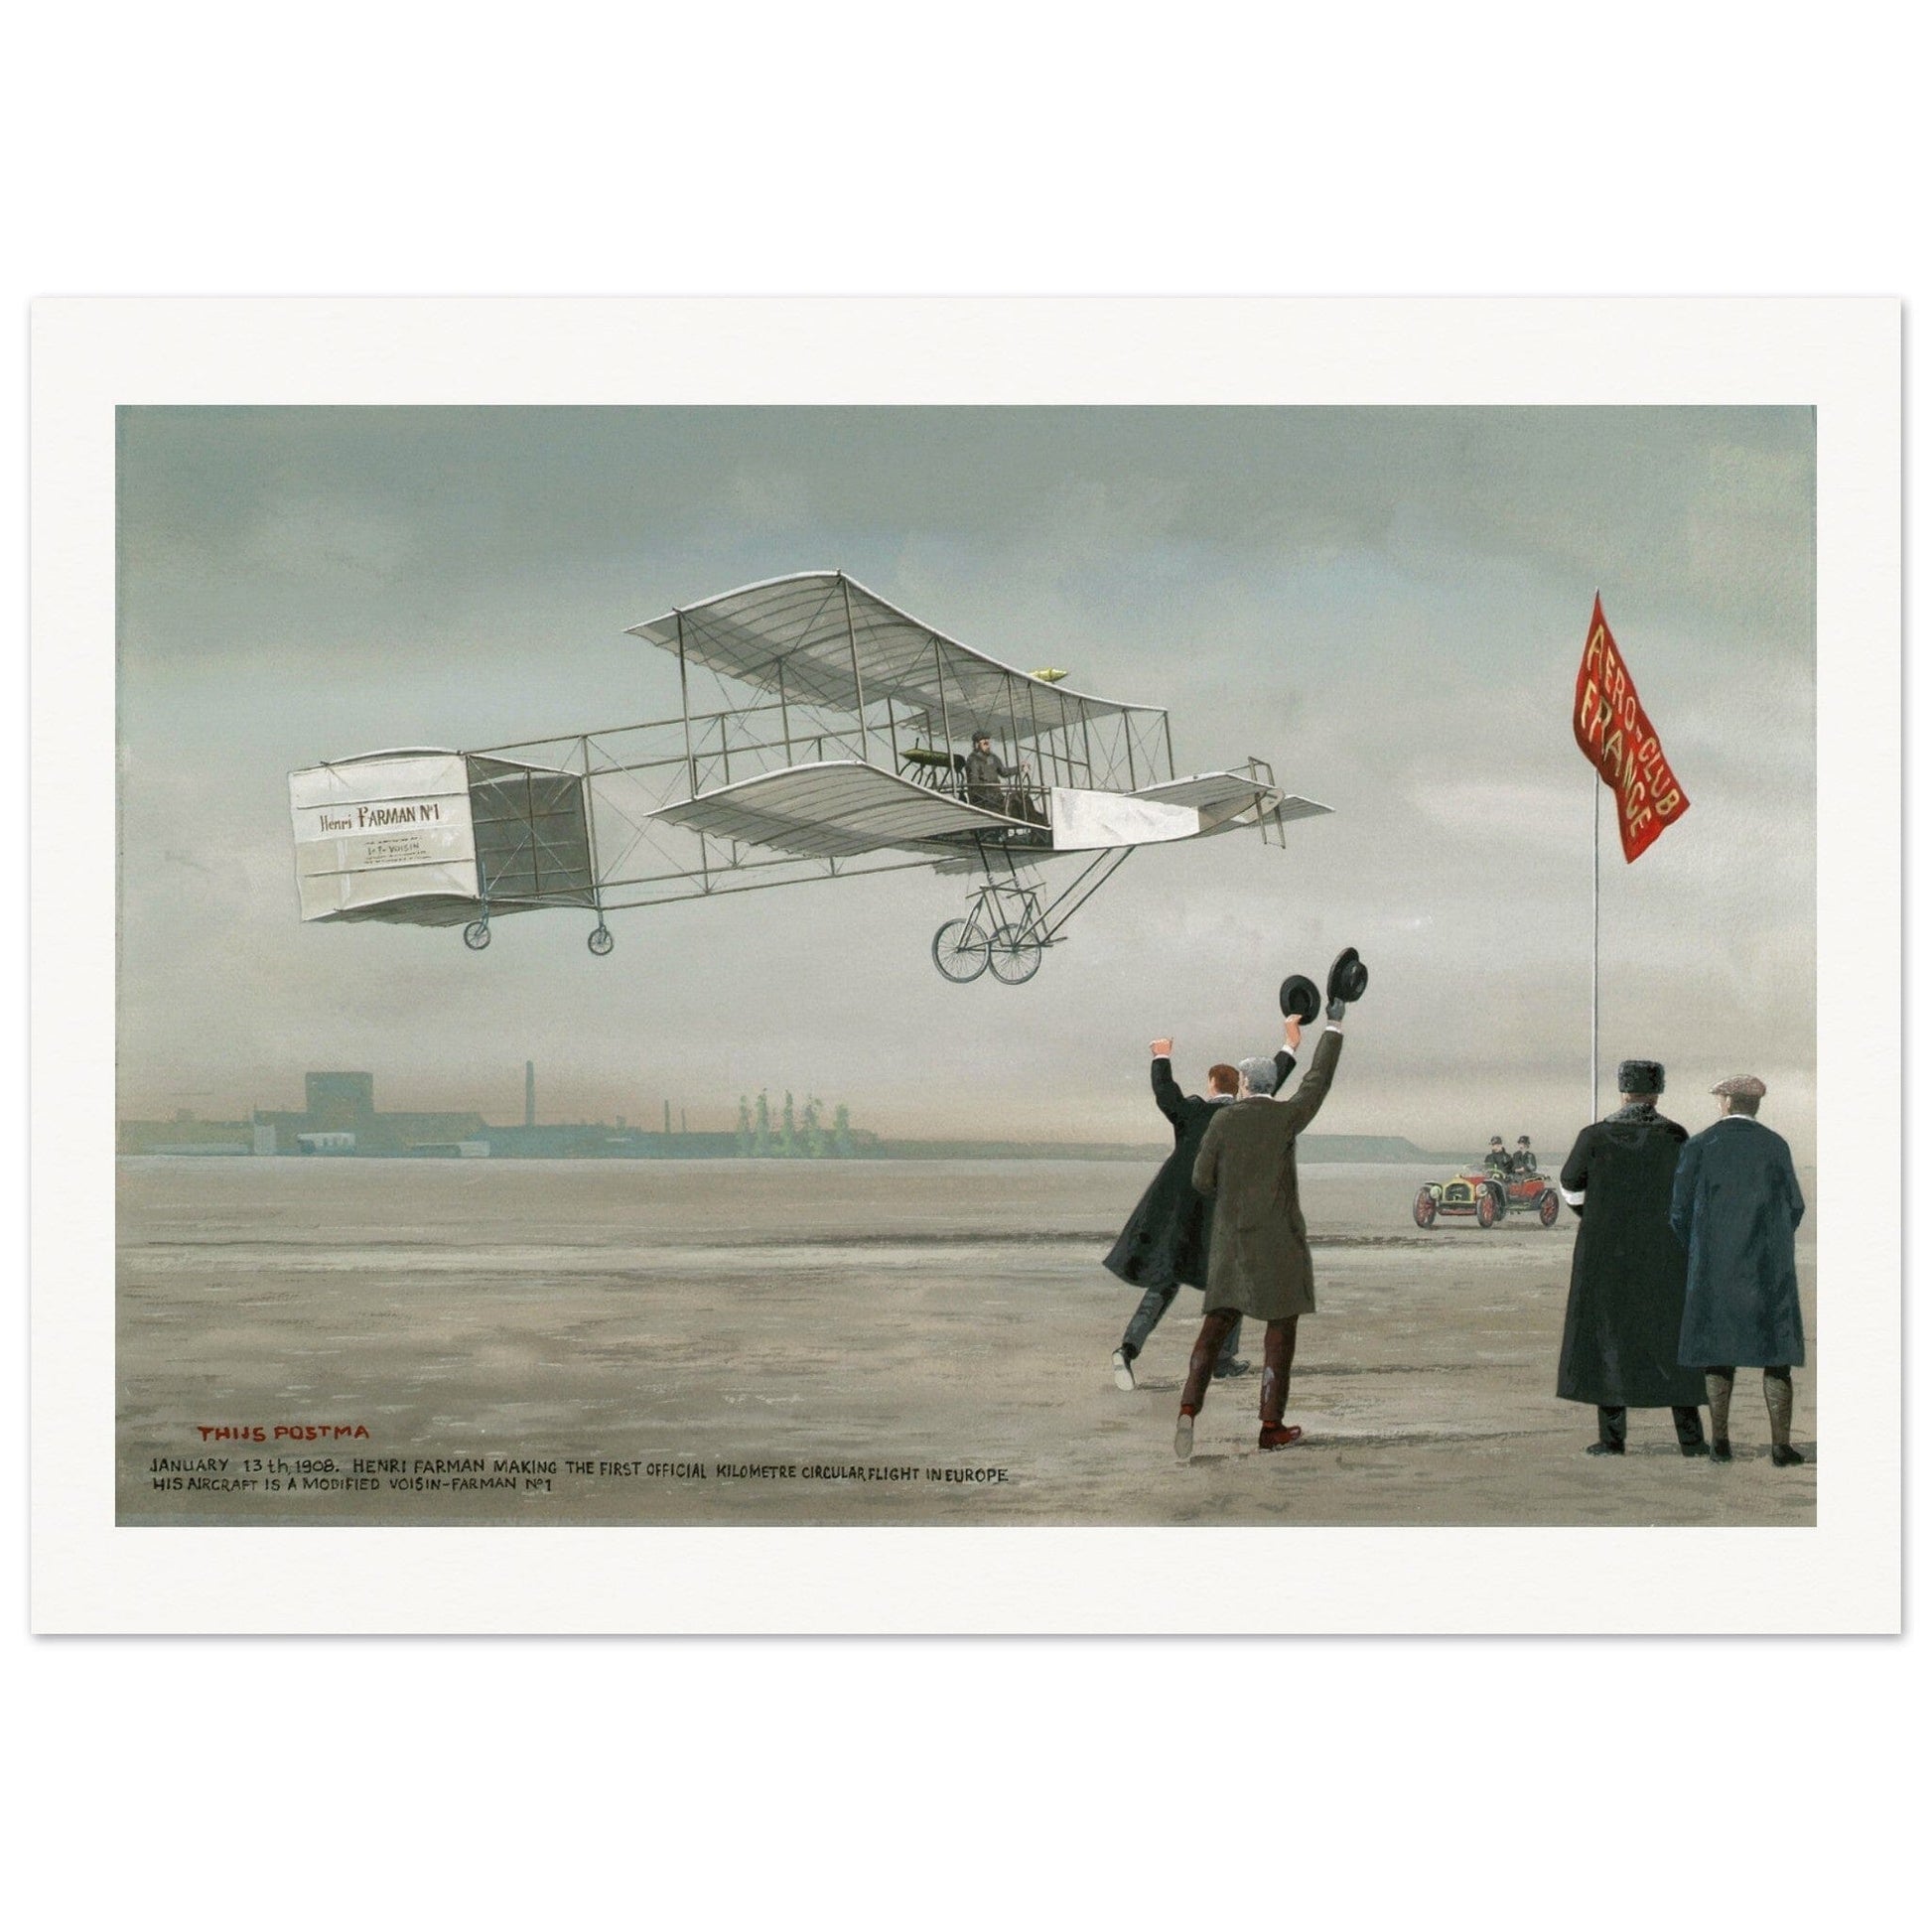 Thijs Postma - Original Painting - Farman No 1 Original Painting TP Aviation Art 